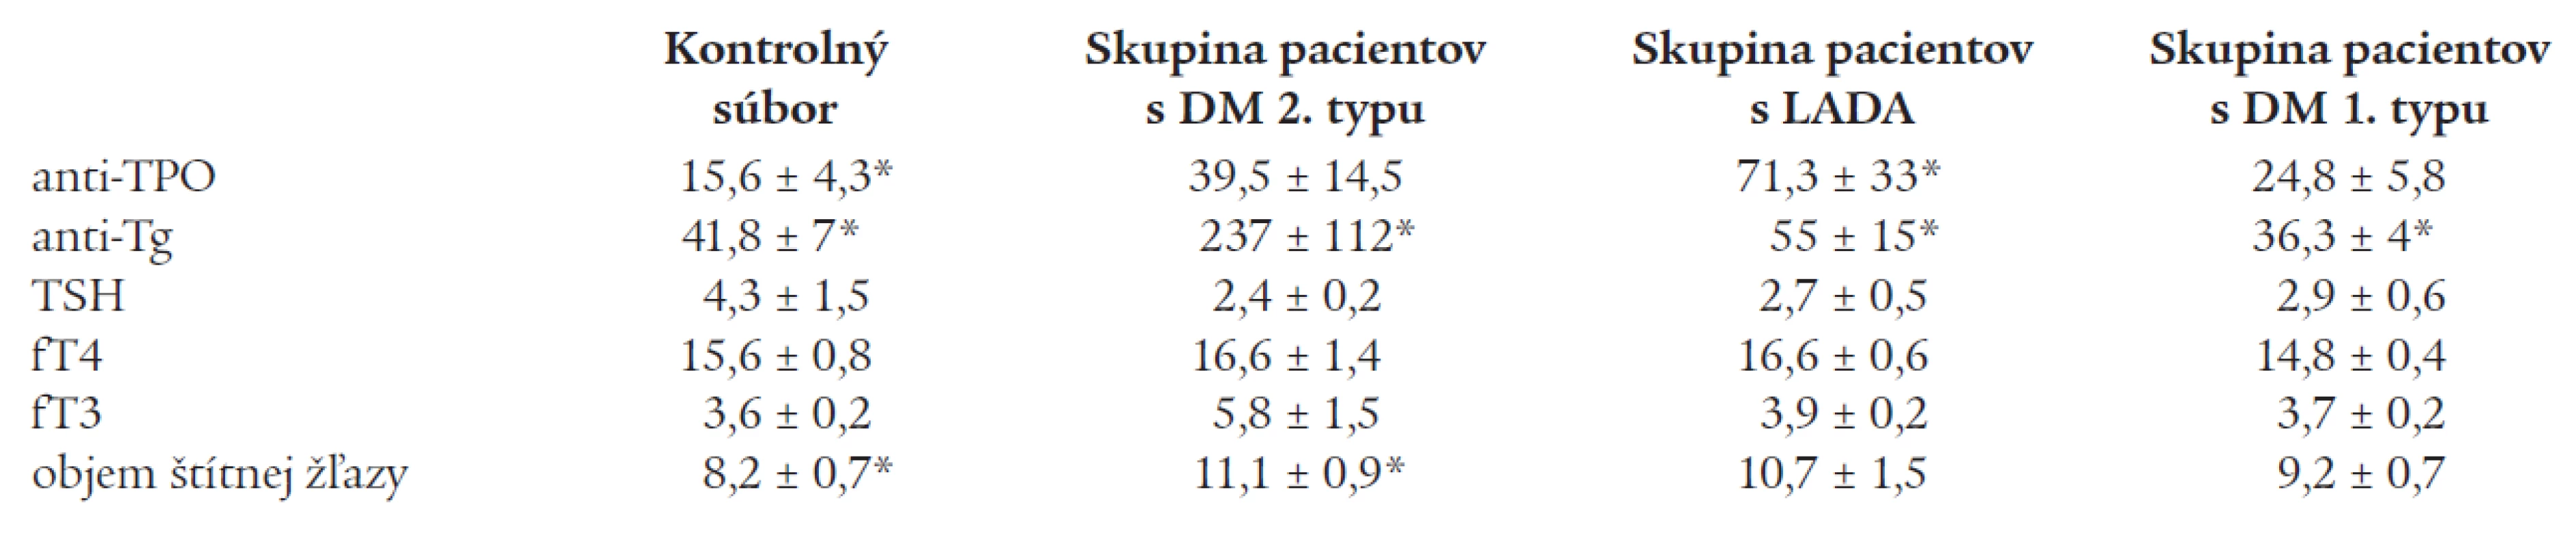 Priemerné hodnoty parametrov tyreoidálneho statusu v kontrolnom súbore a v jednotlivých skupinách pacientov s DM.